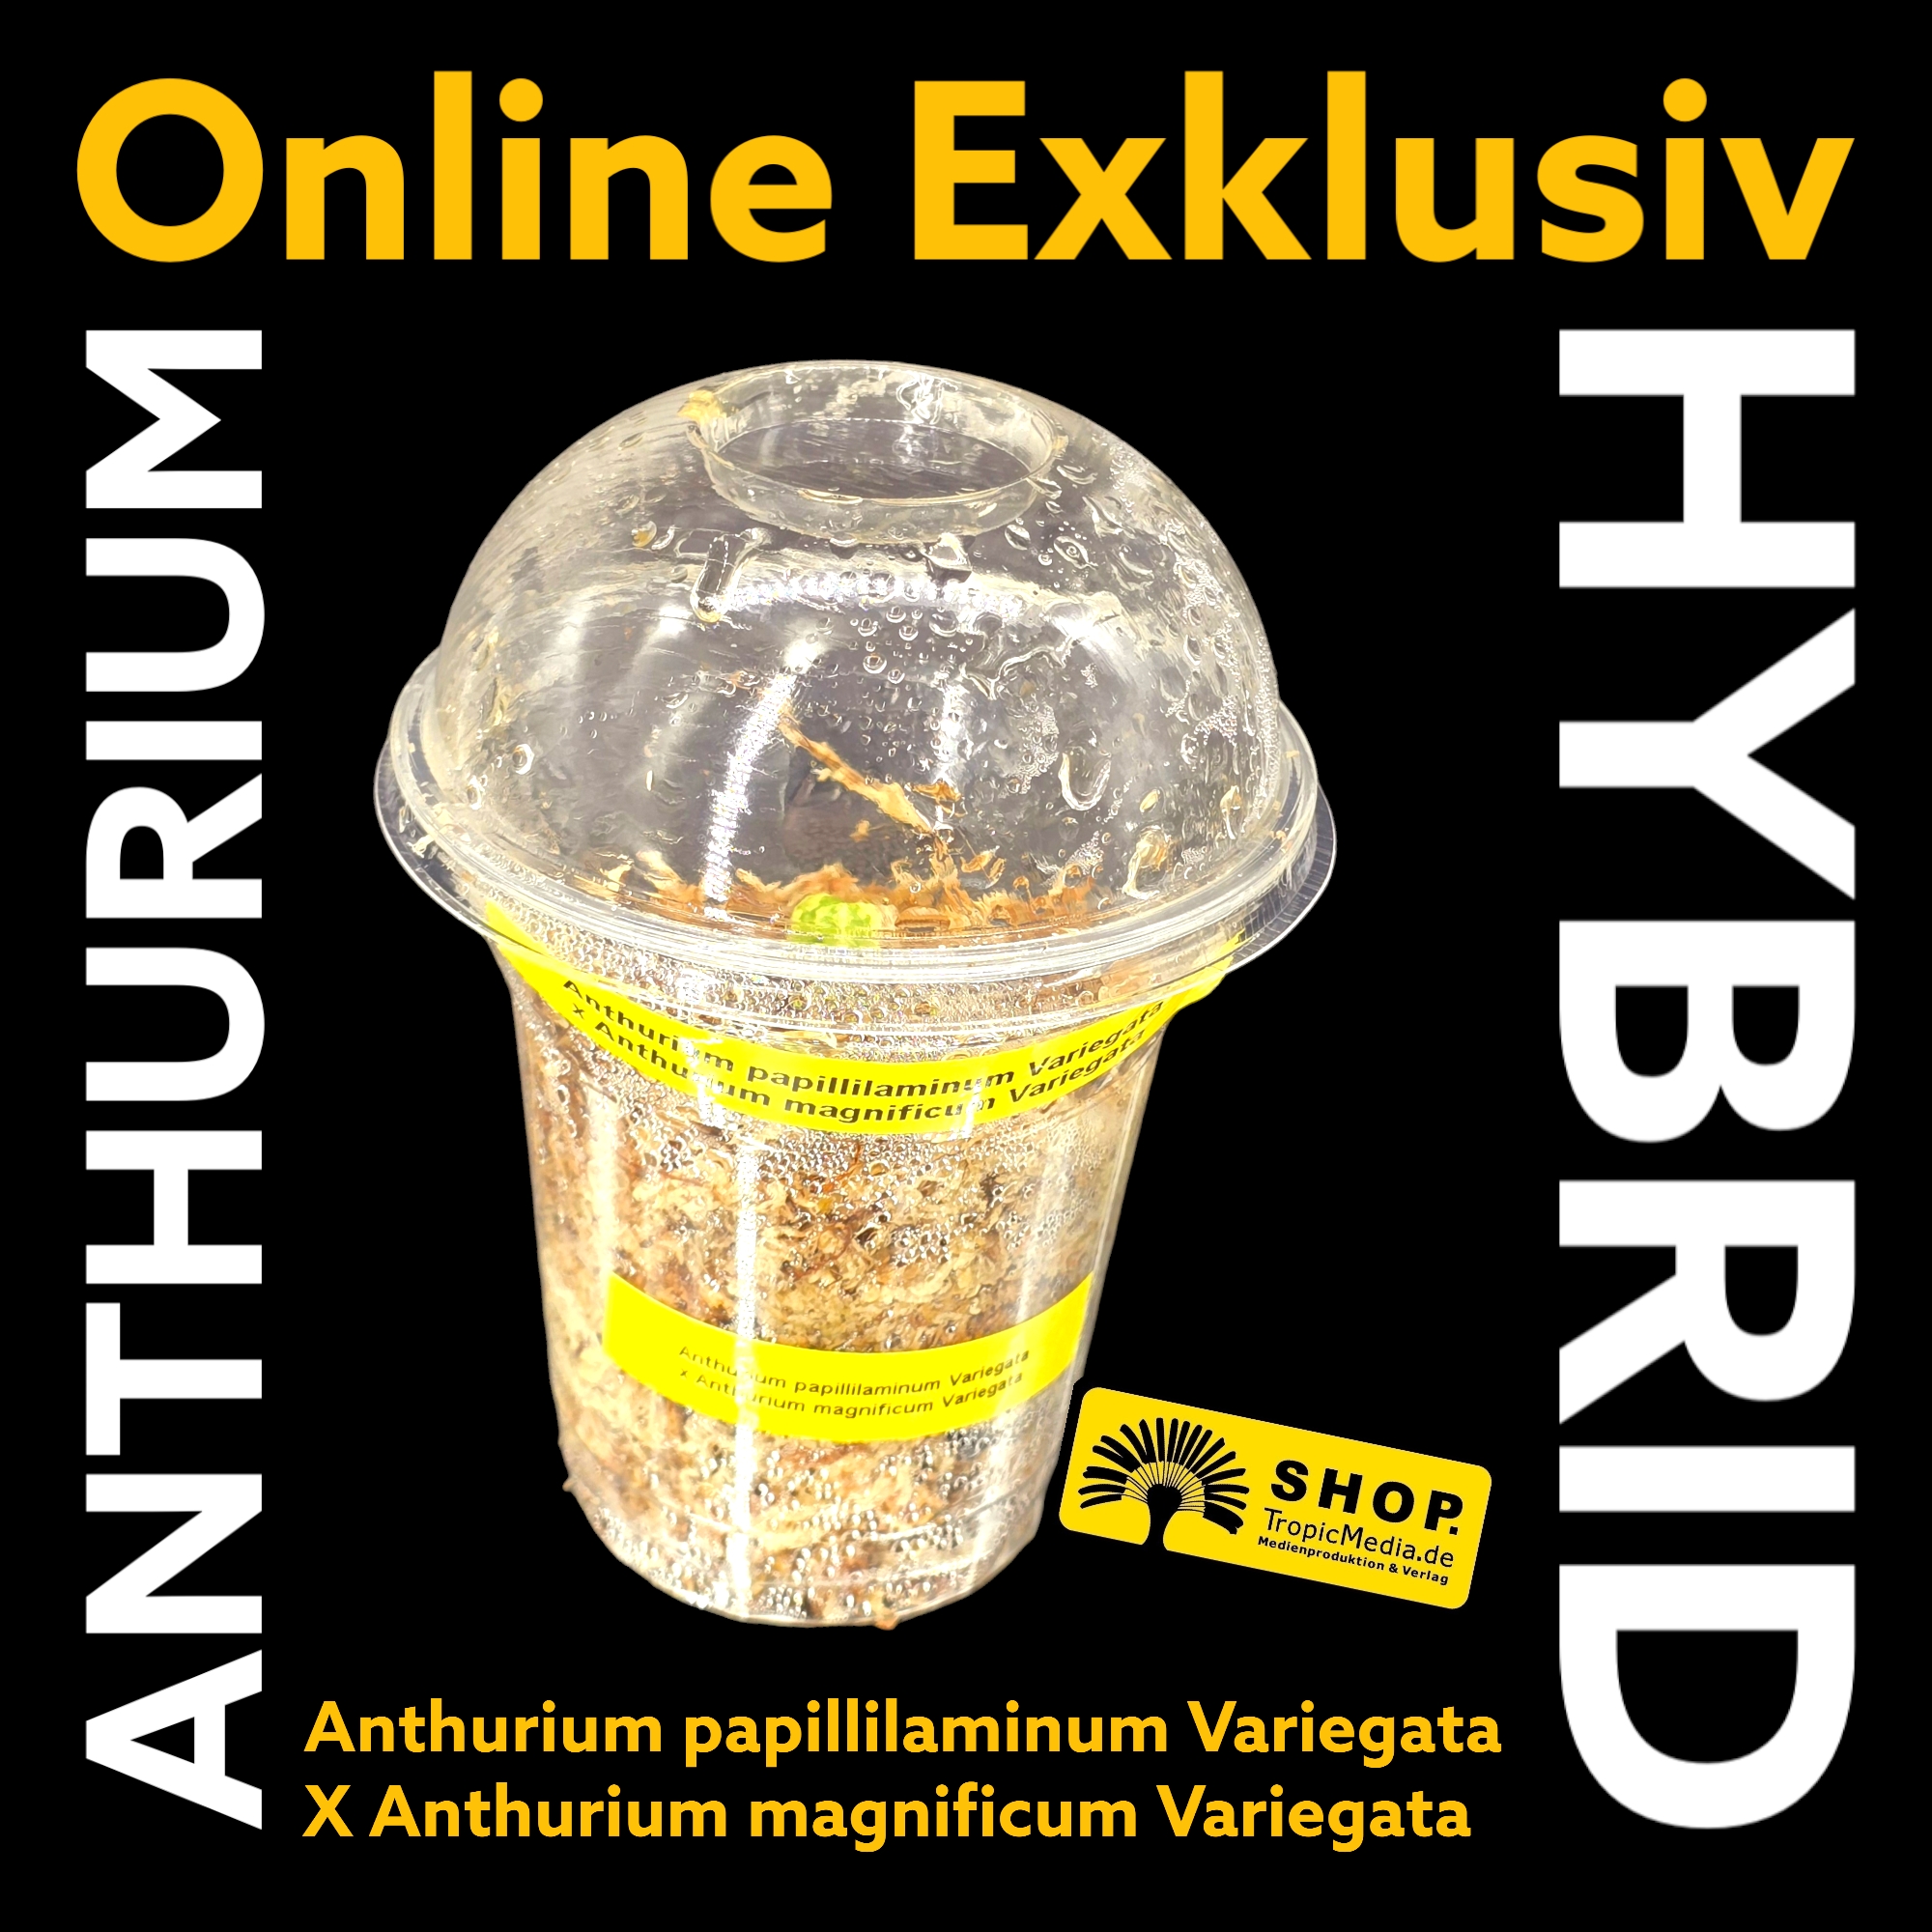 Anthurium papillilaminum Variegata X Anthurium magnificum Variegata EXQUISITE Kreuzung erstmals in Europa